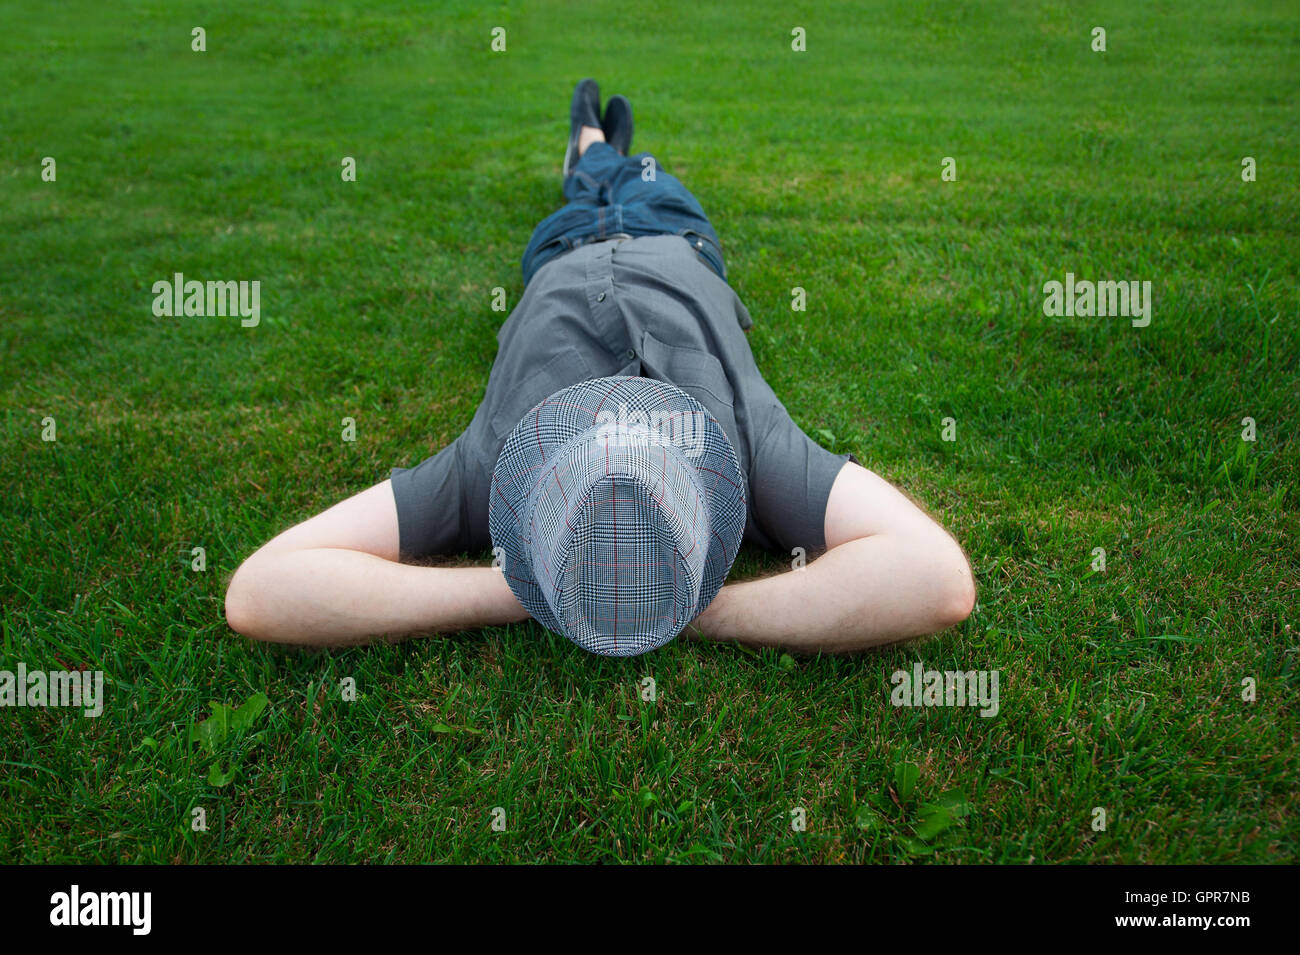 Homme étendu dans un champ sur l'herbe verte avec le chapeau sur son visage Banque D'Images